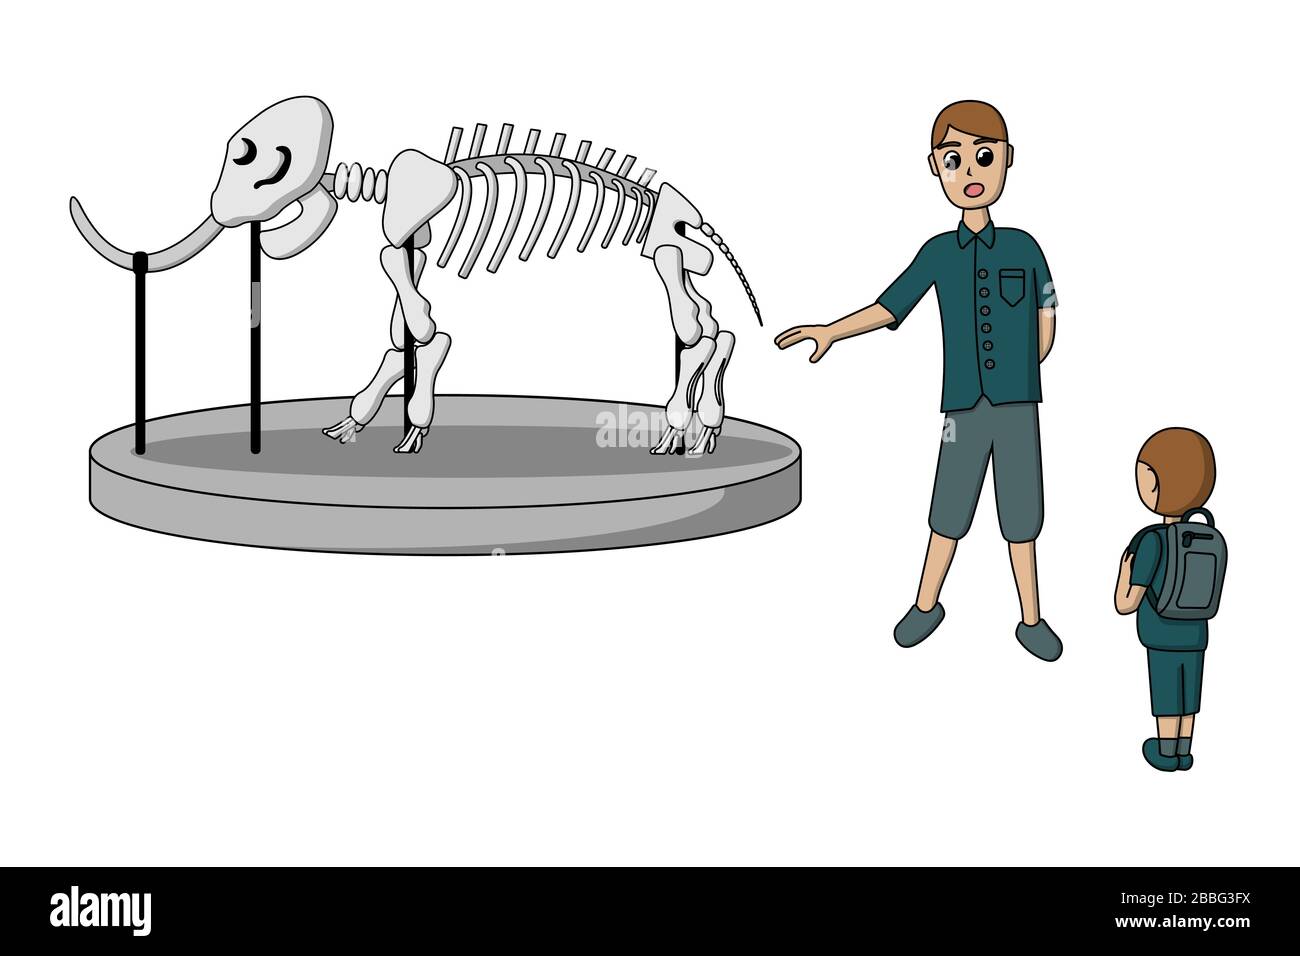 Le guide lors d'une visite du musée montre le squelette d'une mammouth. Personnages humains des visiteurs. Illustration vectorielle Illustration de Vecteur